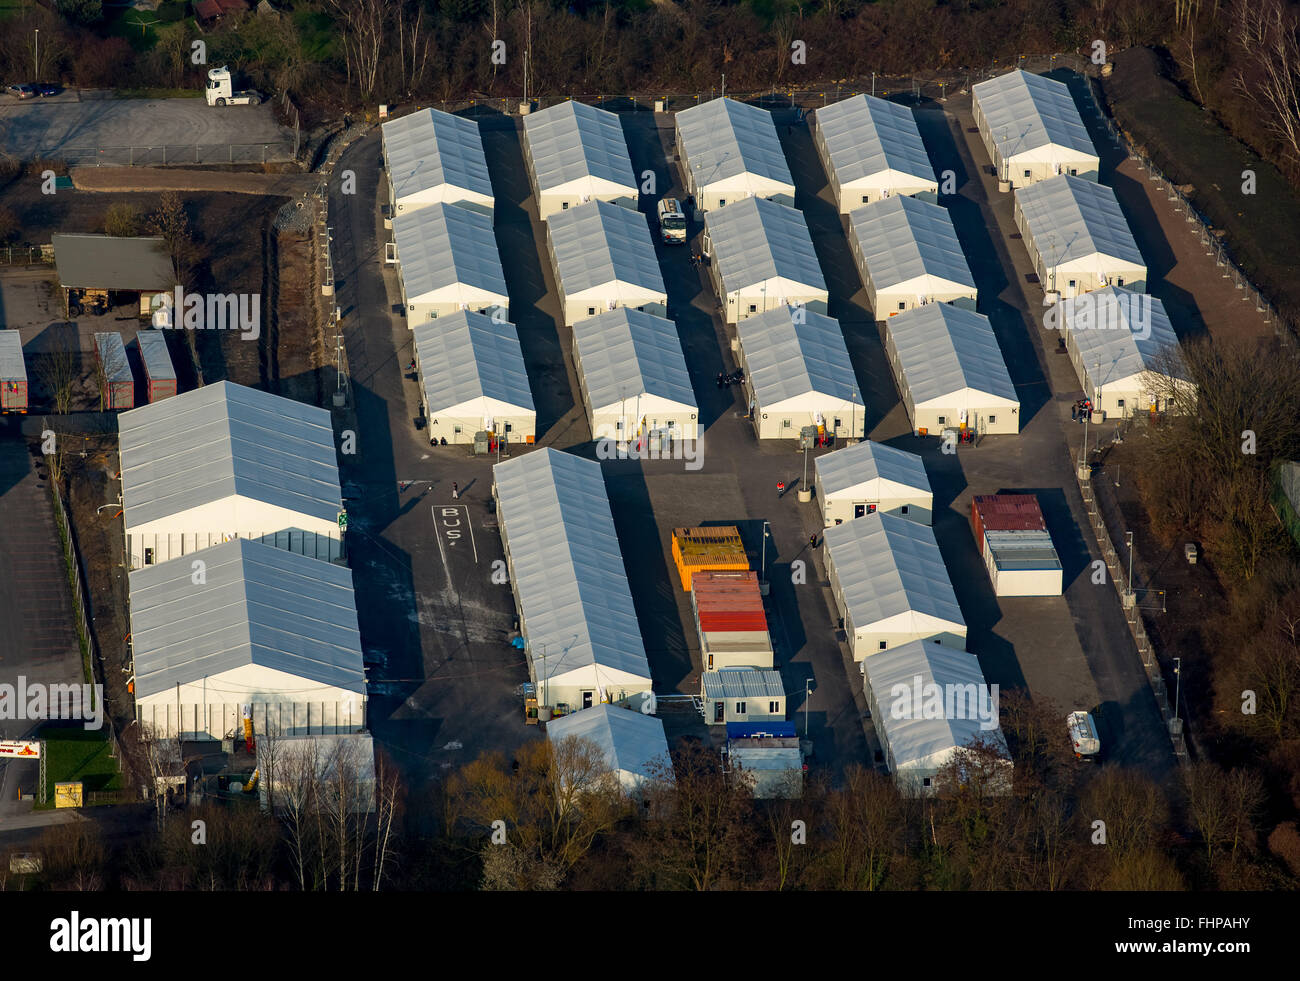 Vue aérienne, tentes, des réfugiés, des réfugiés du camp de réfugiés de logement, crise des réfugiés, Wanne-Eickel, Herne,Ruhr,Rhénanie du Nord-Westphalie Banque D'Images